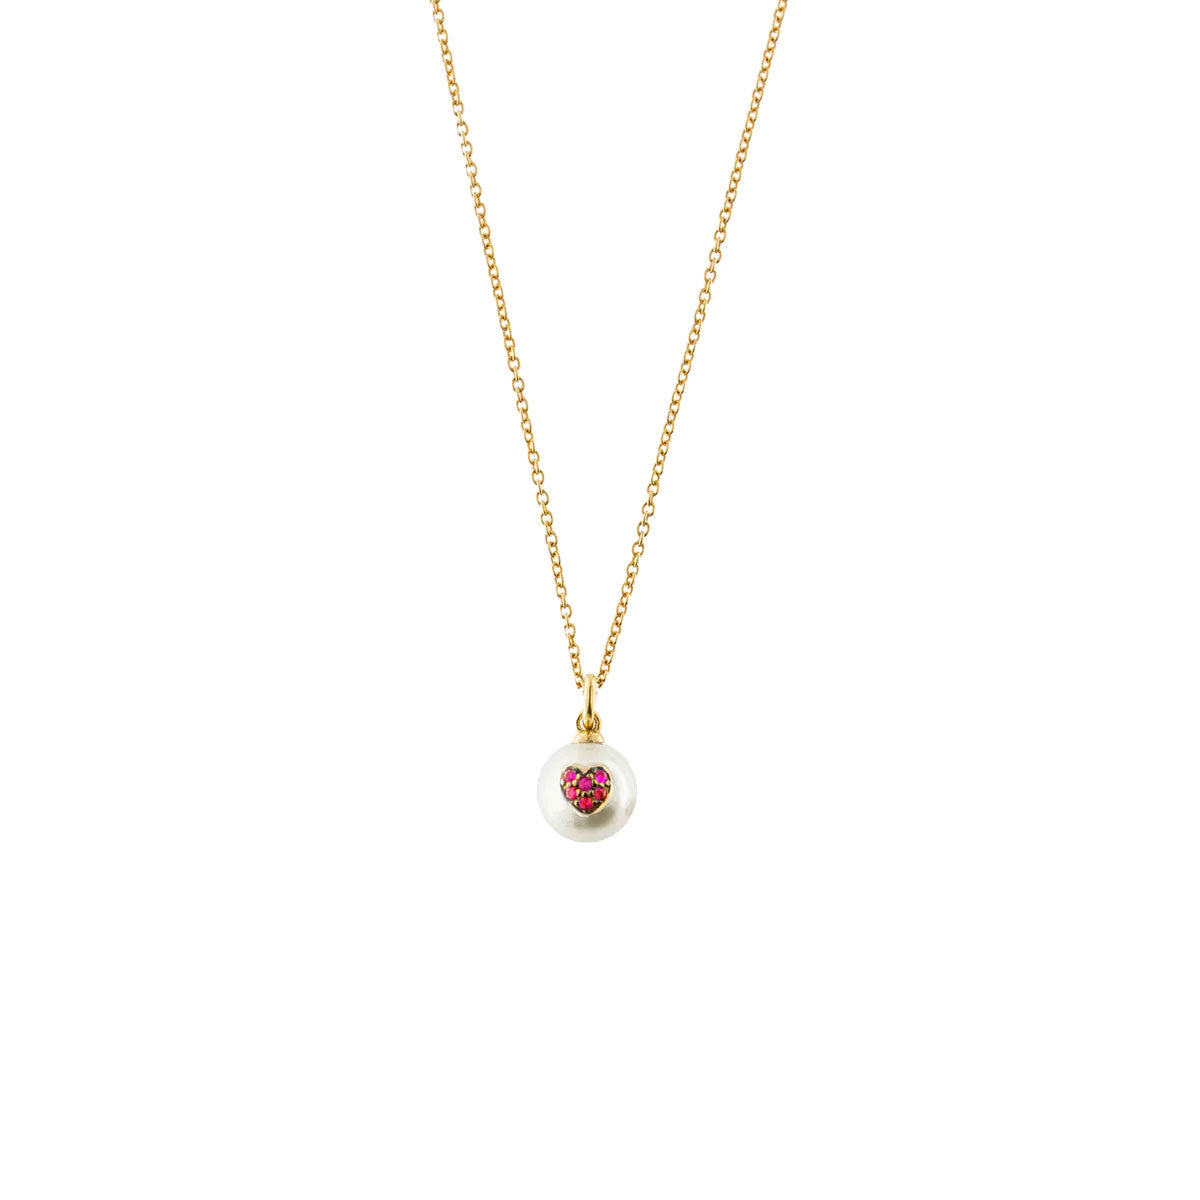 Girocollo a catenina semplice in argento 925 e finitura in oro giallo 18kt con una perla pendente. La perla bianca è impreziosita da un cuore con pavé di zirconi rossi.